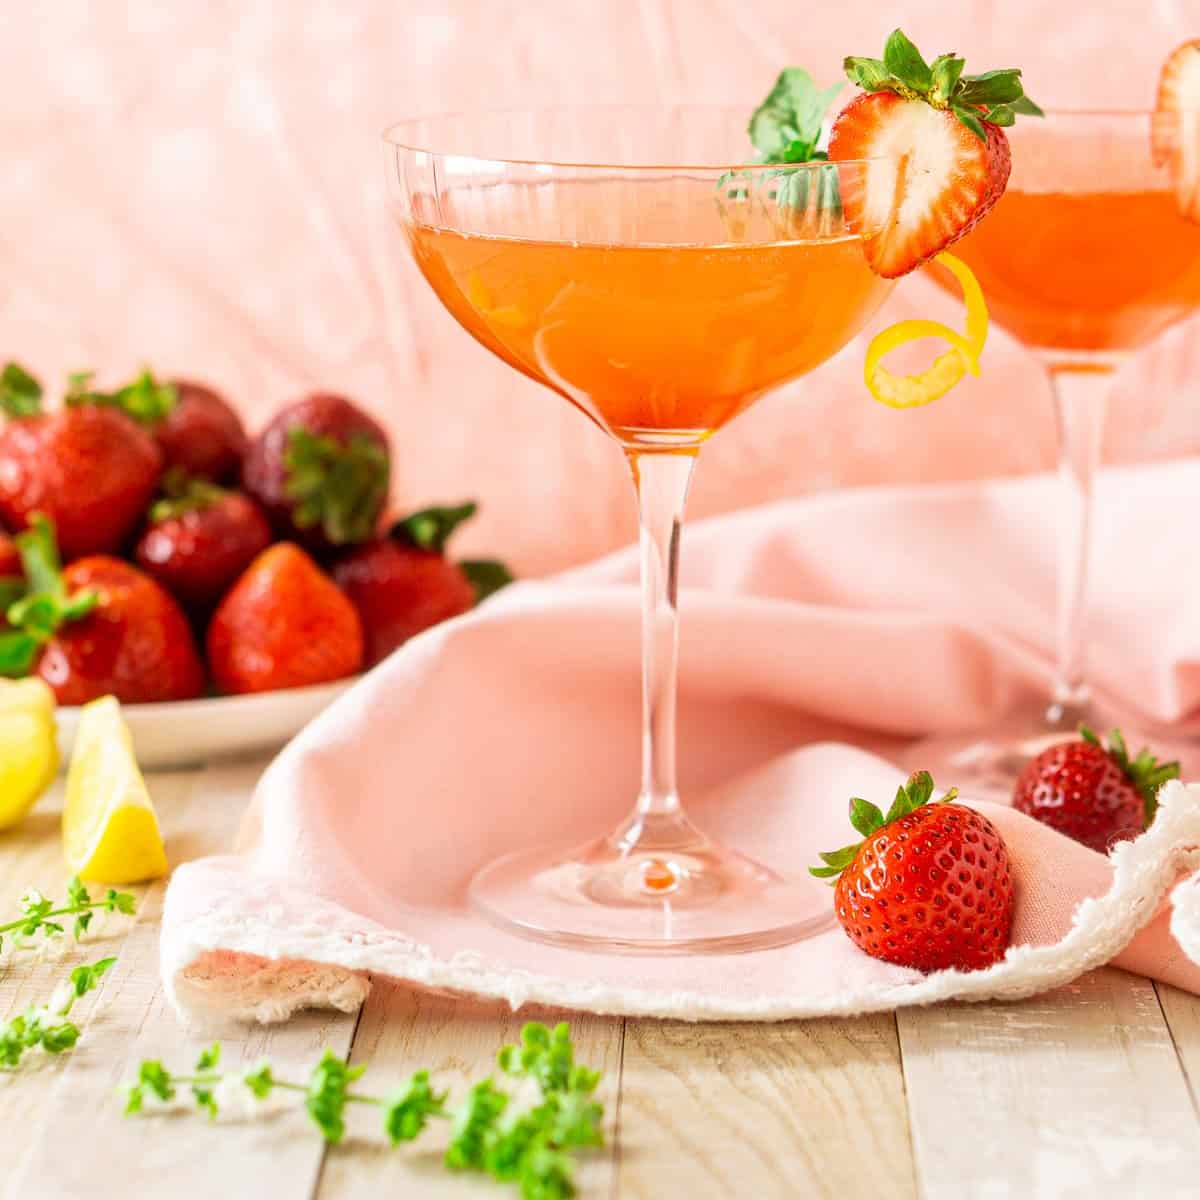 A strawberry basil limoncello martini.